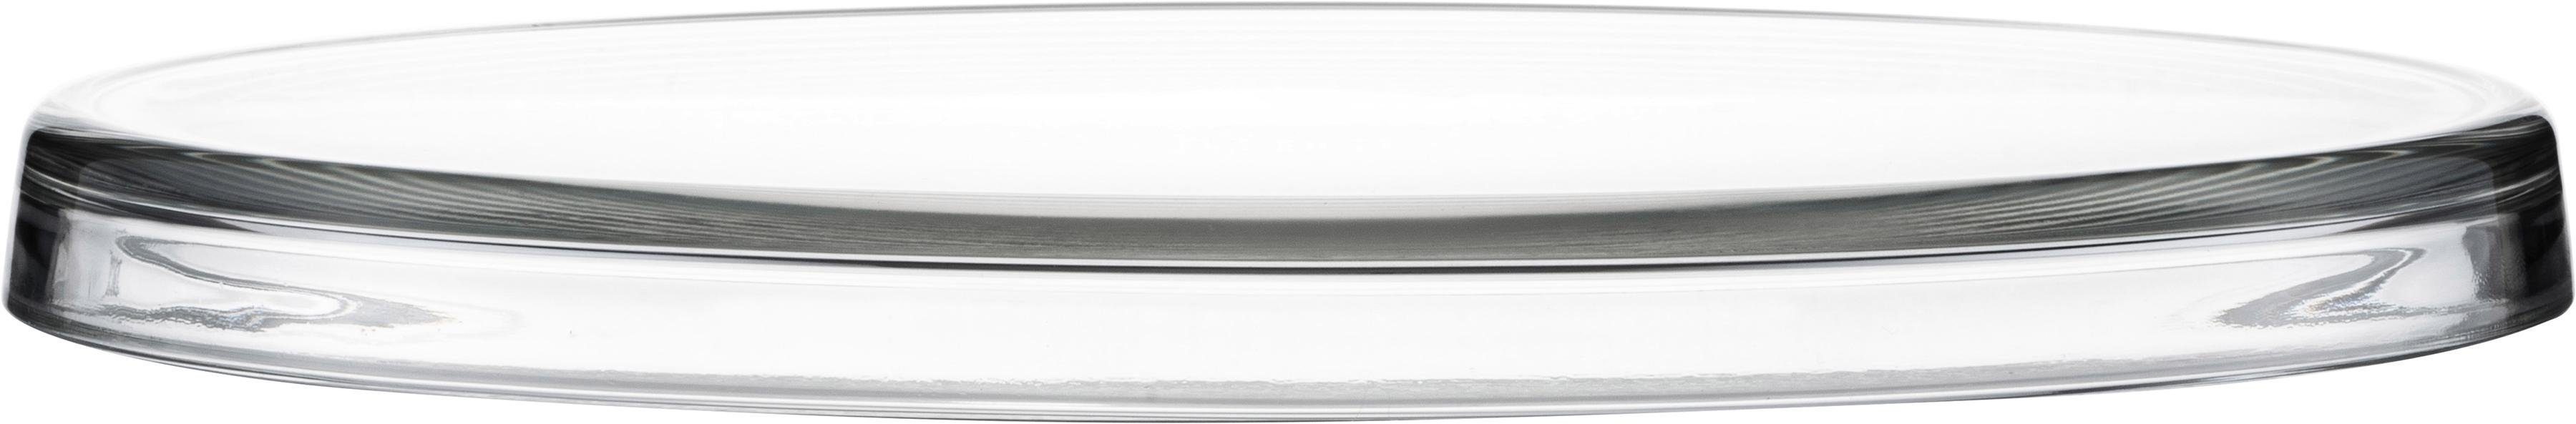 Eisch Tortenplatte, Glas, satiniertes Kristallglas, Ø 31 cm